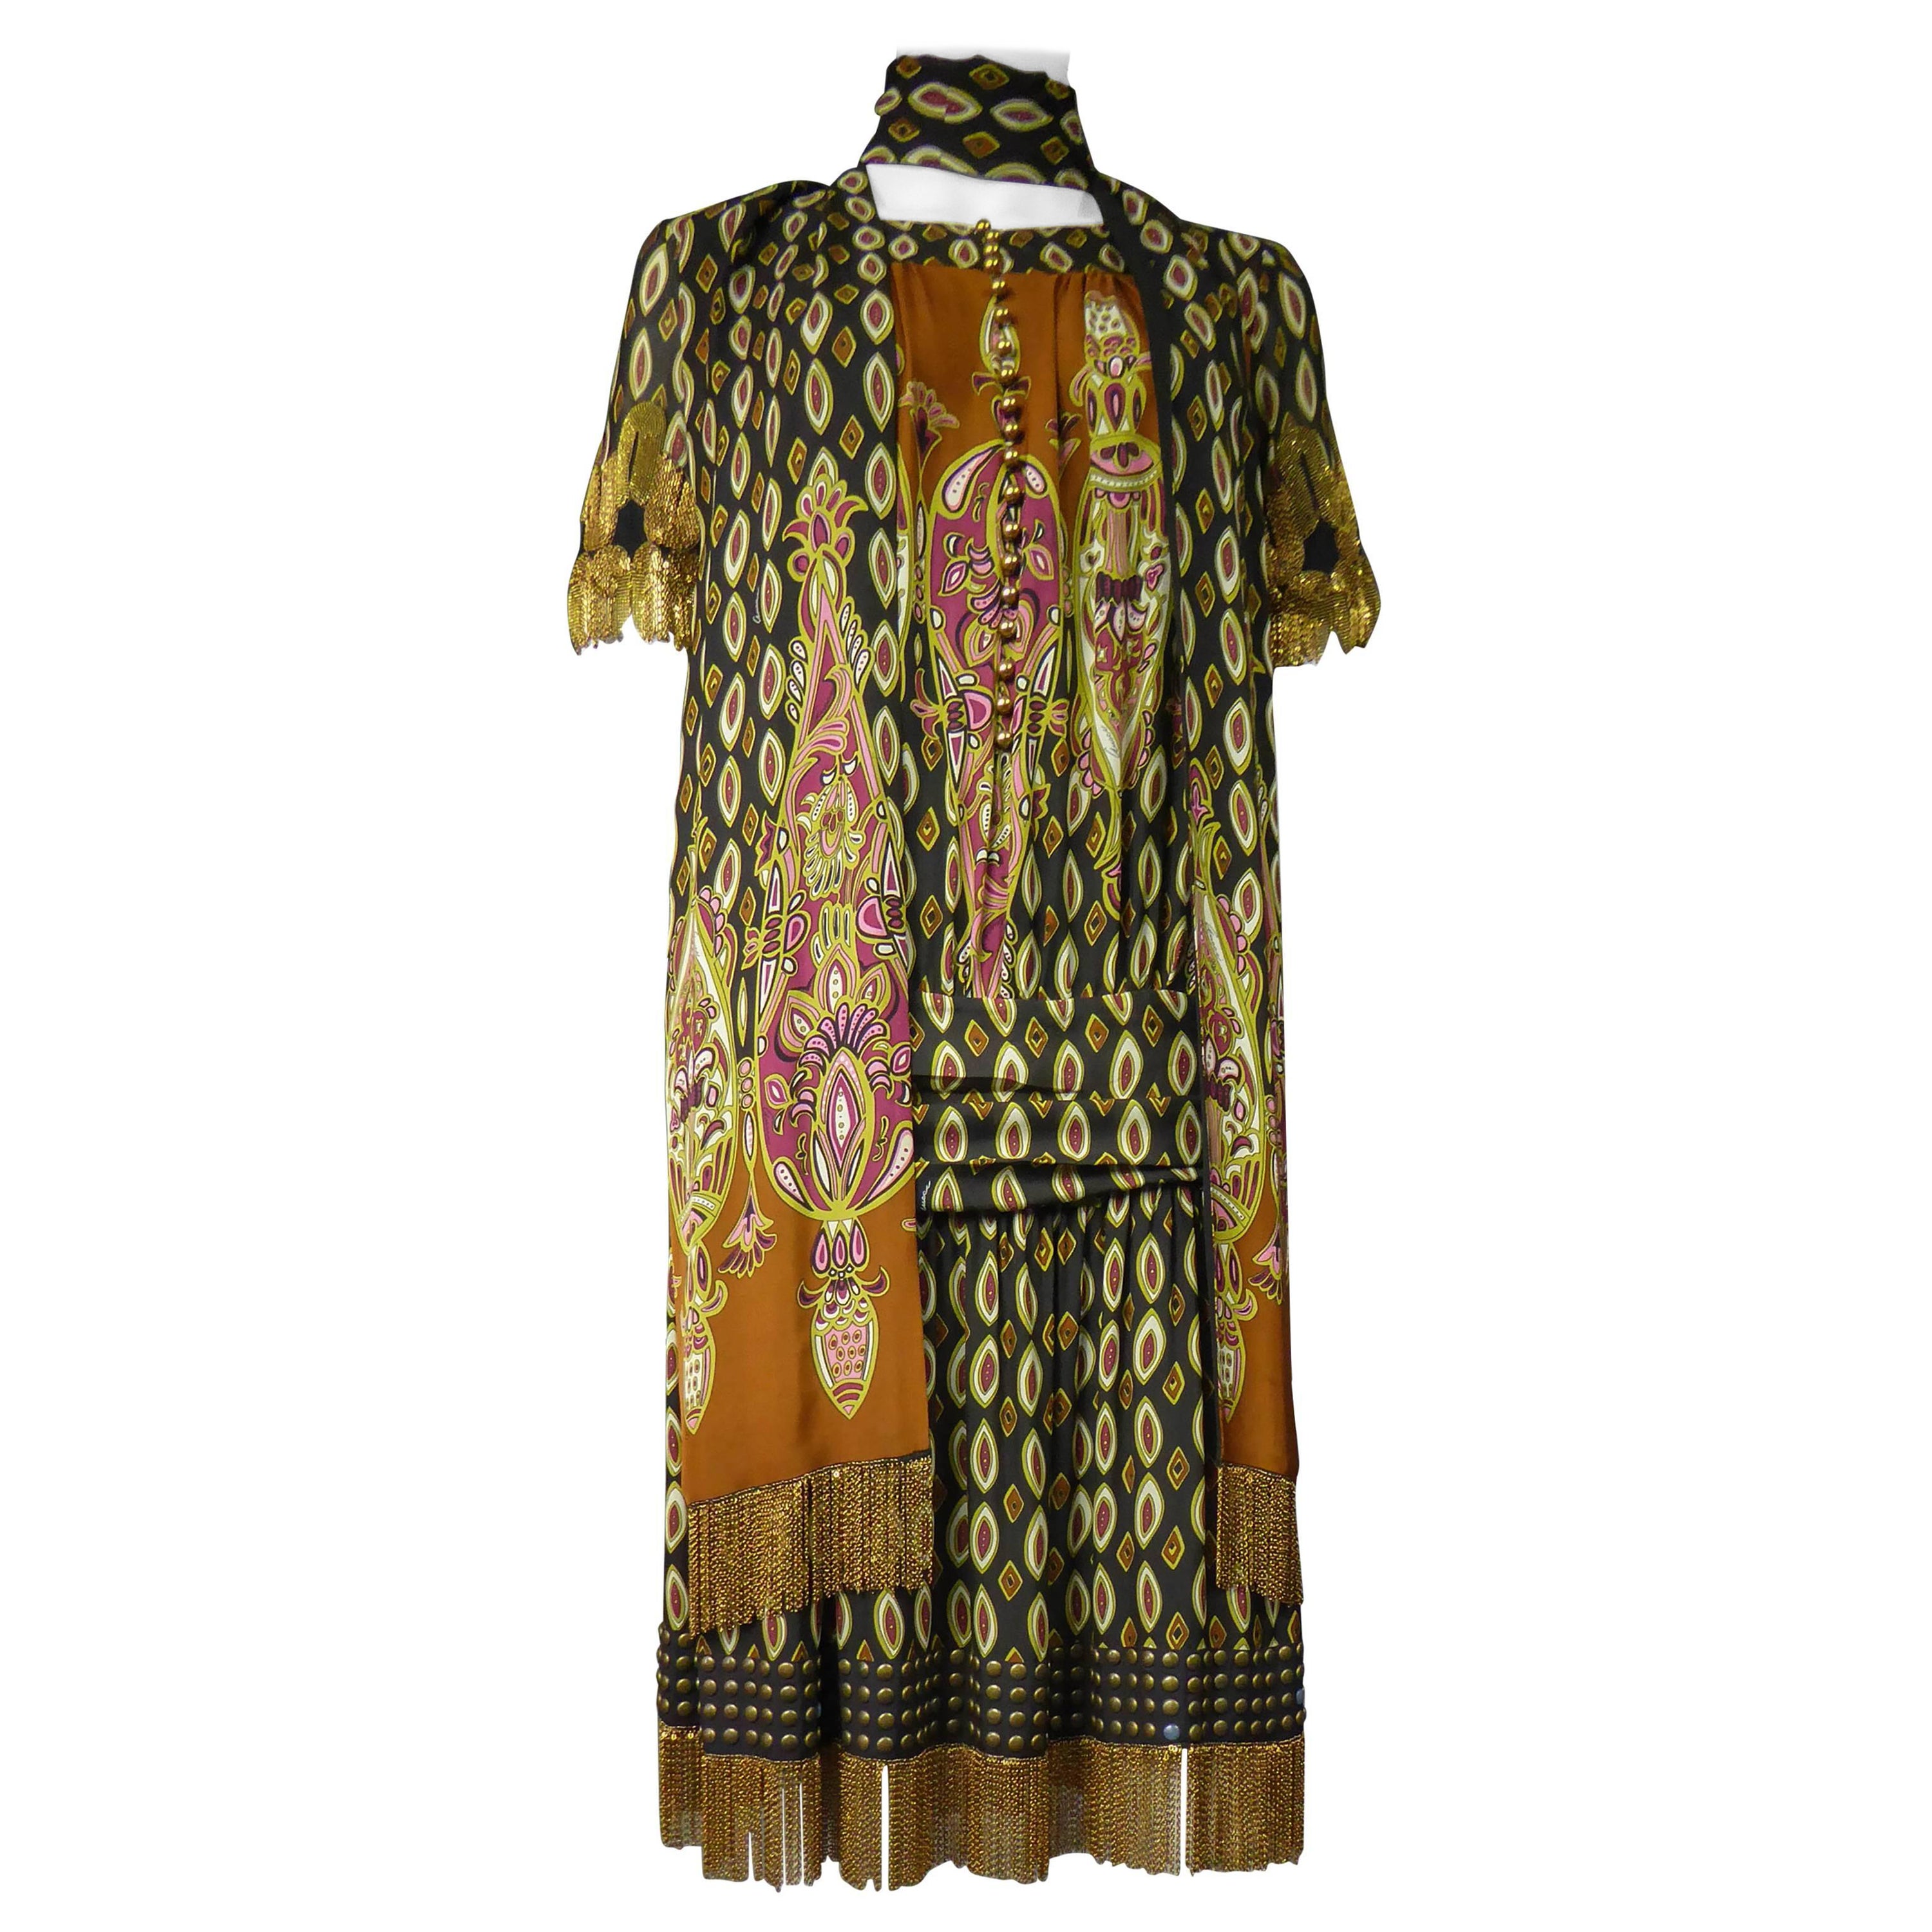 A Printed Silk Gucci Dress Fall / Winter 2008 - 2009